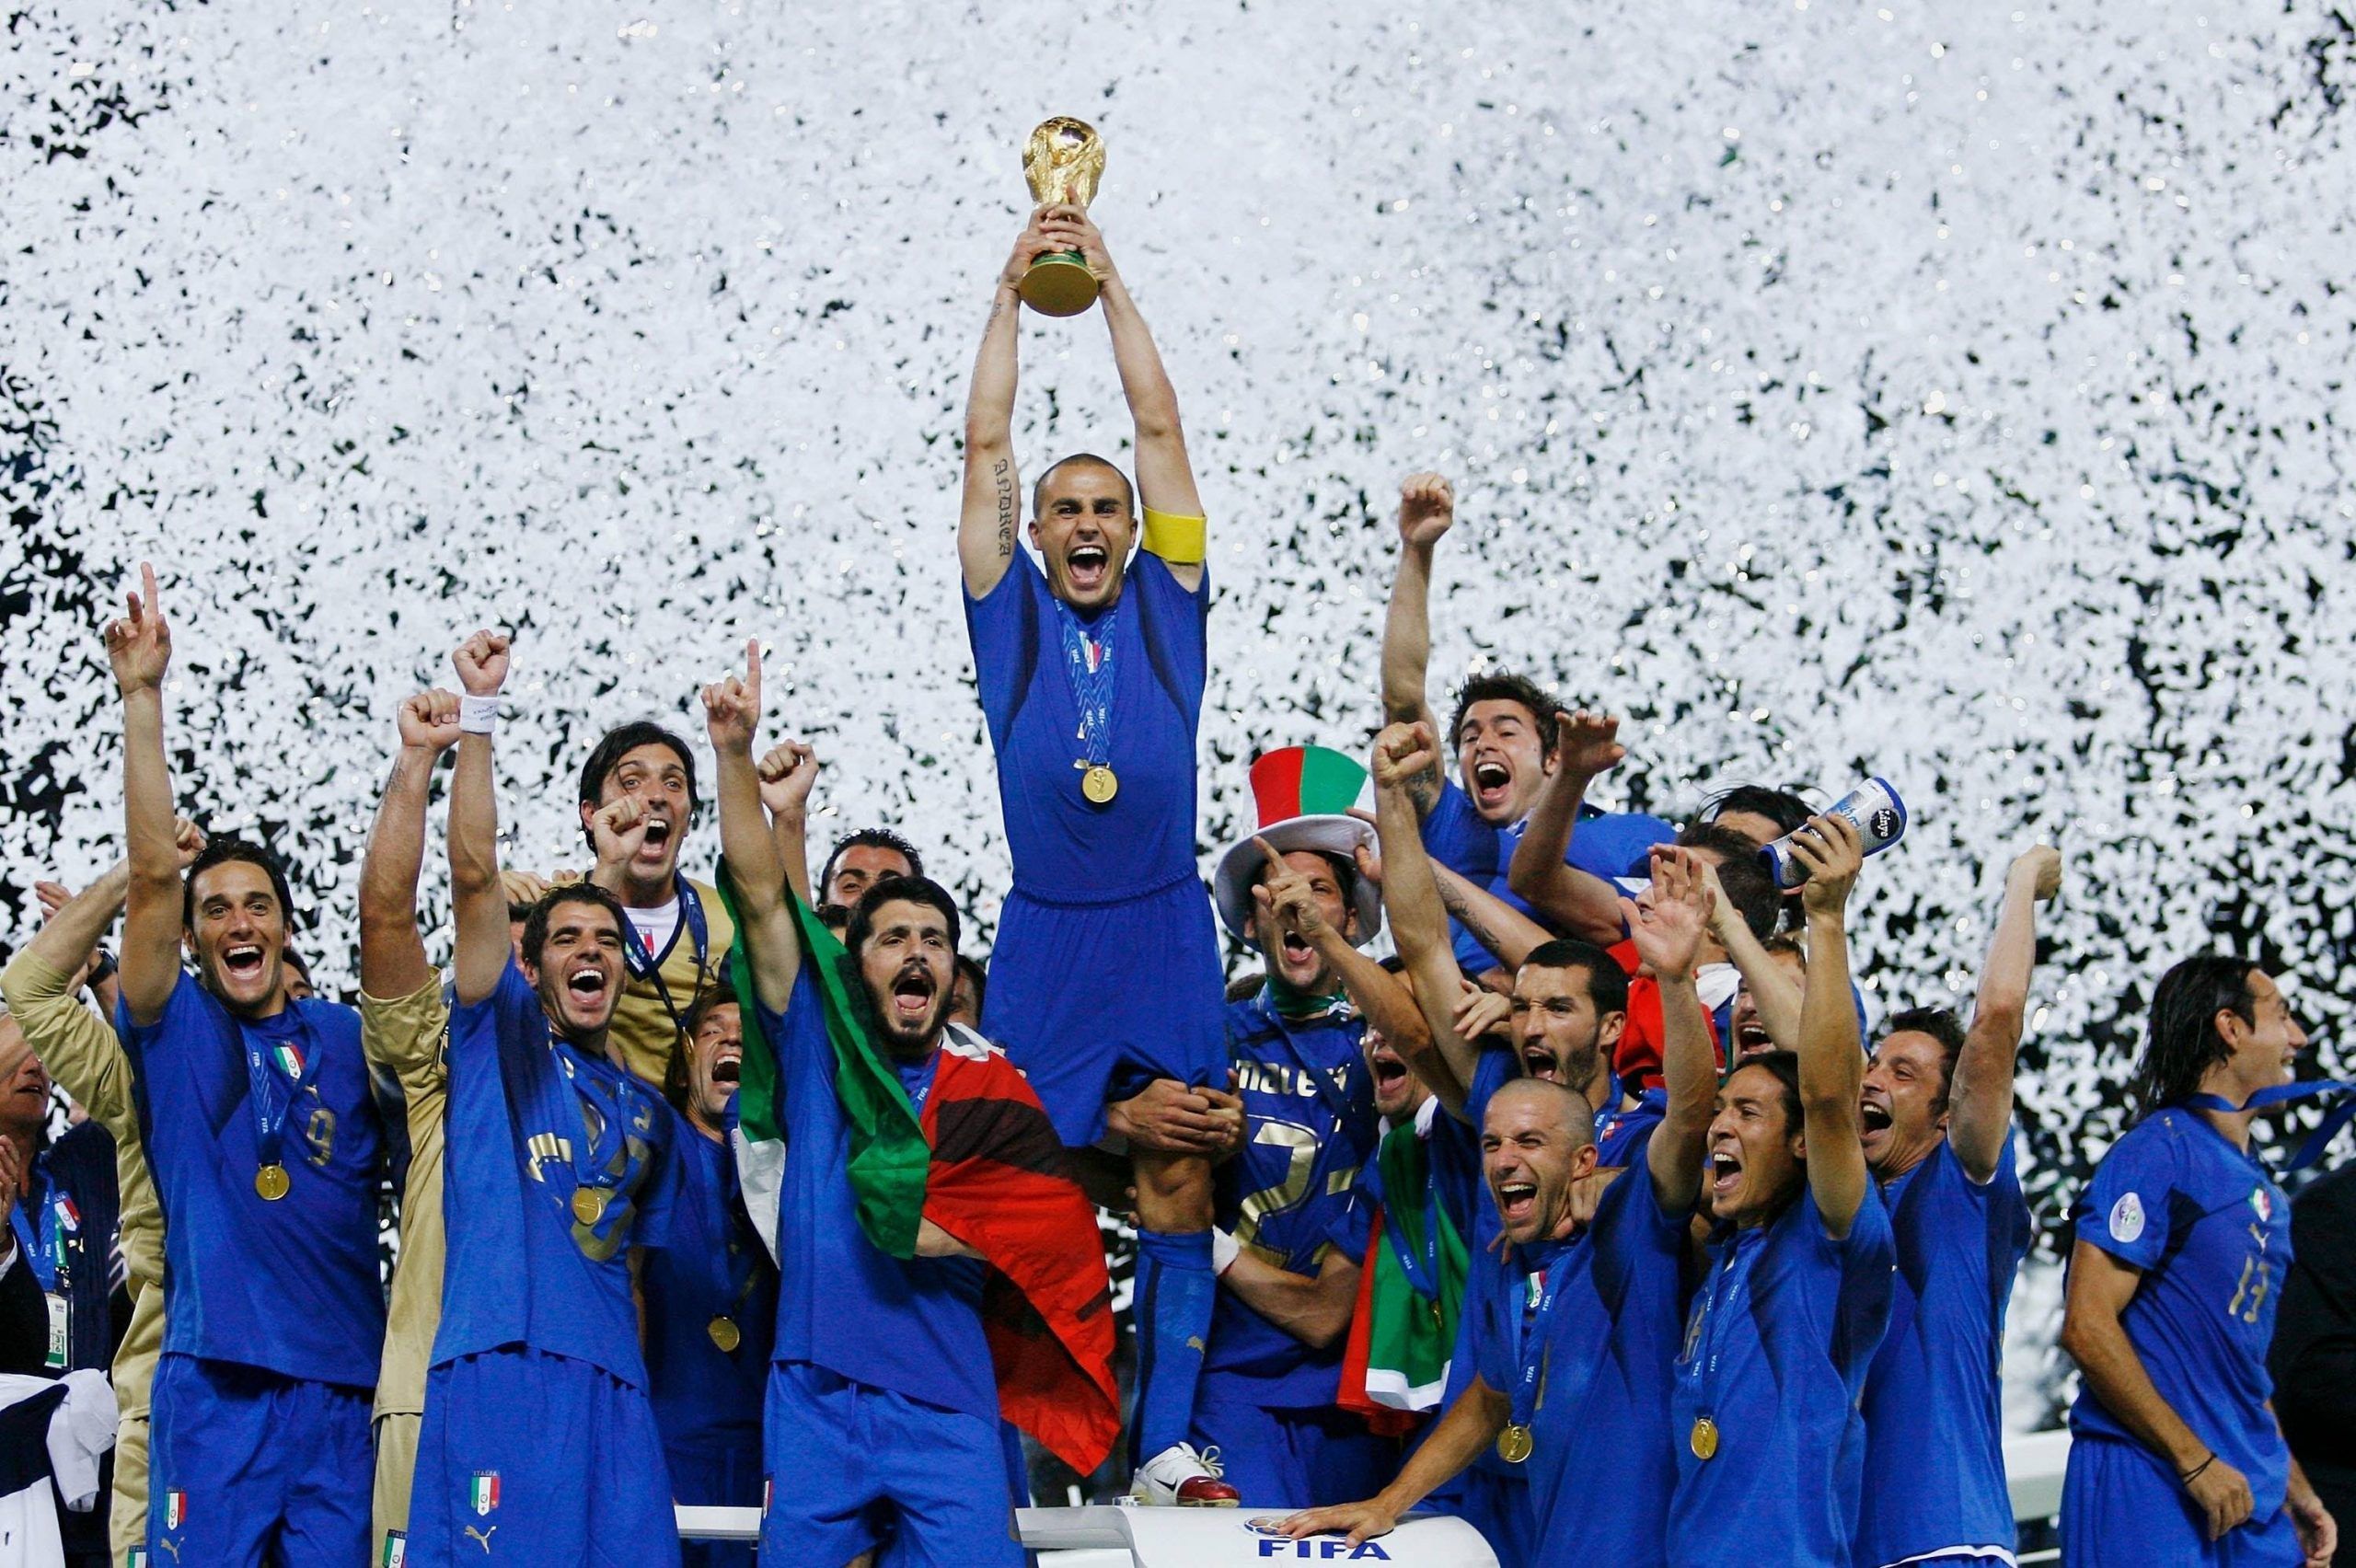 9 luglio, 10 anni fa l'Italia era campione del Mondo